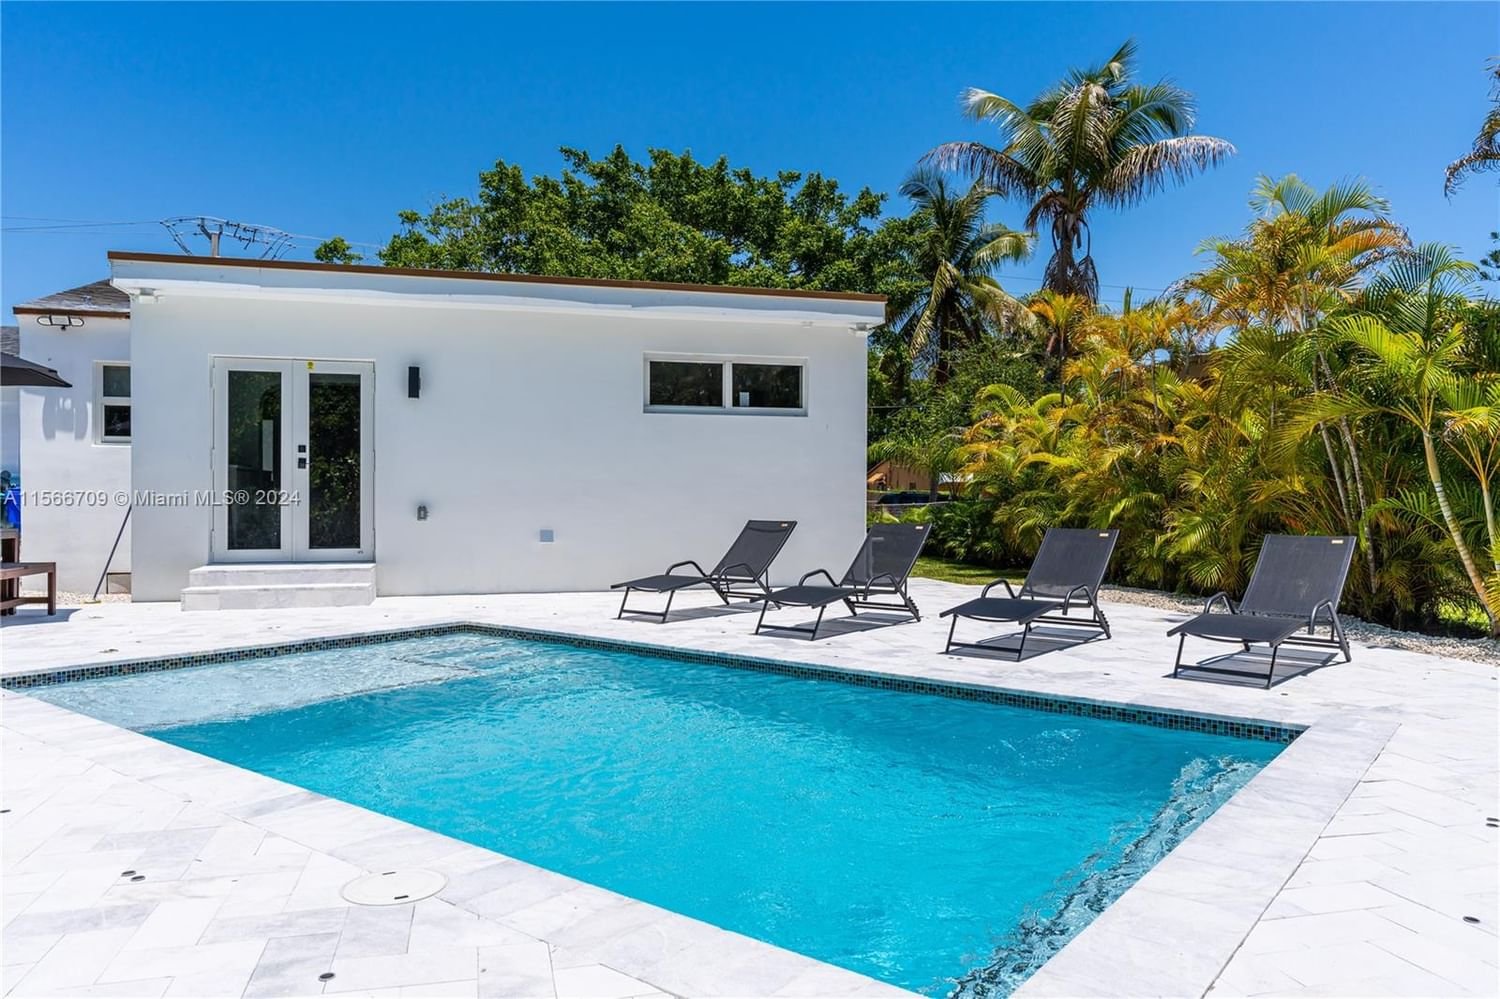 Real estate property located at 990 11th St, Miami-Dade County, BRICKELL ESTATES, Miami, FL